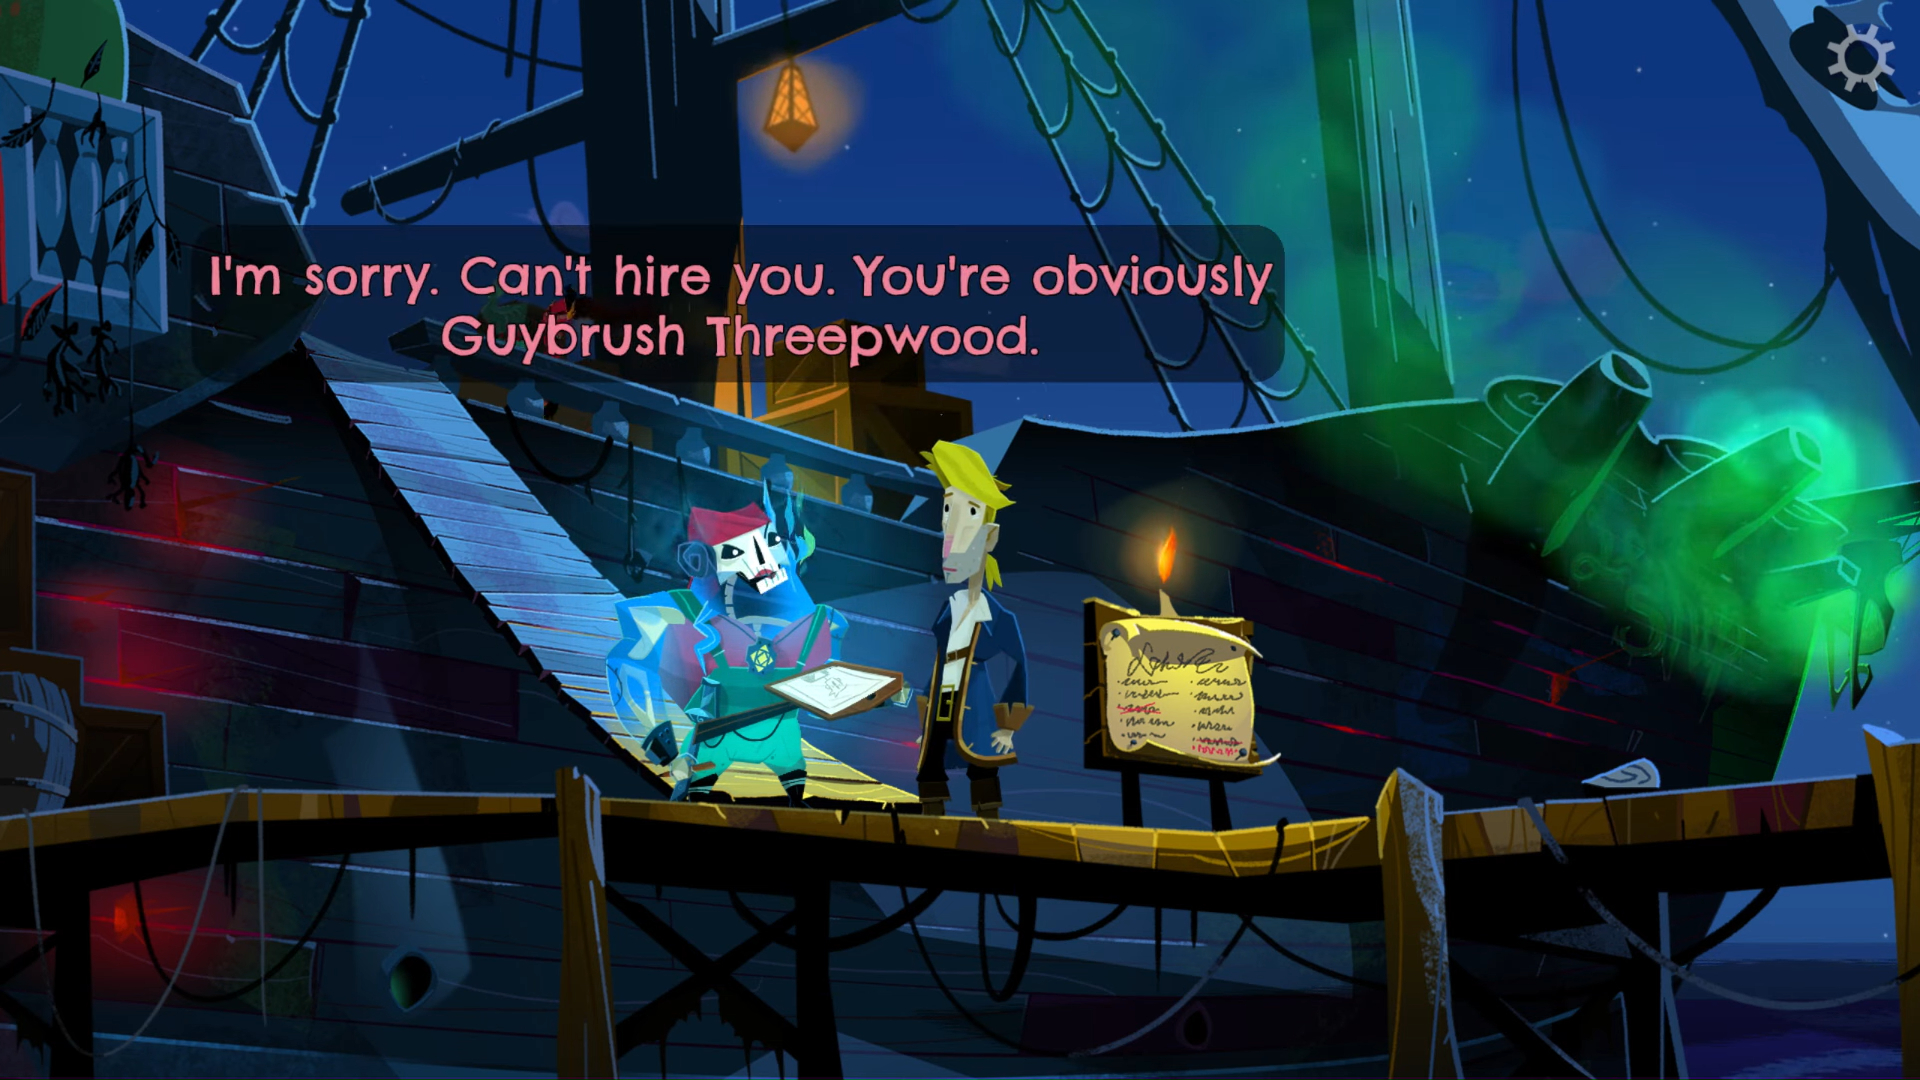 Ein skelettierter Pirat, der mit Guybrush spricht.